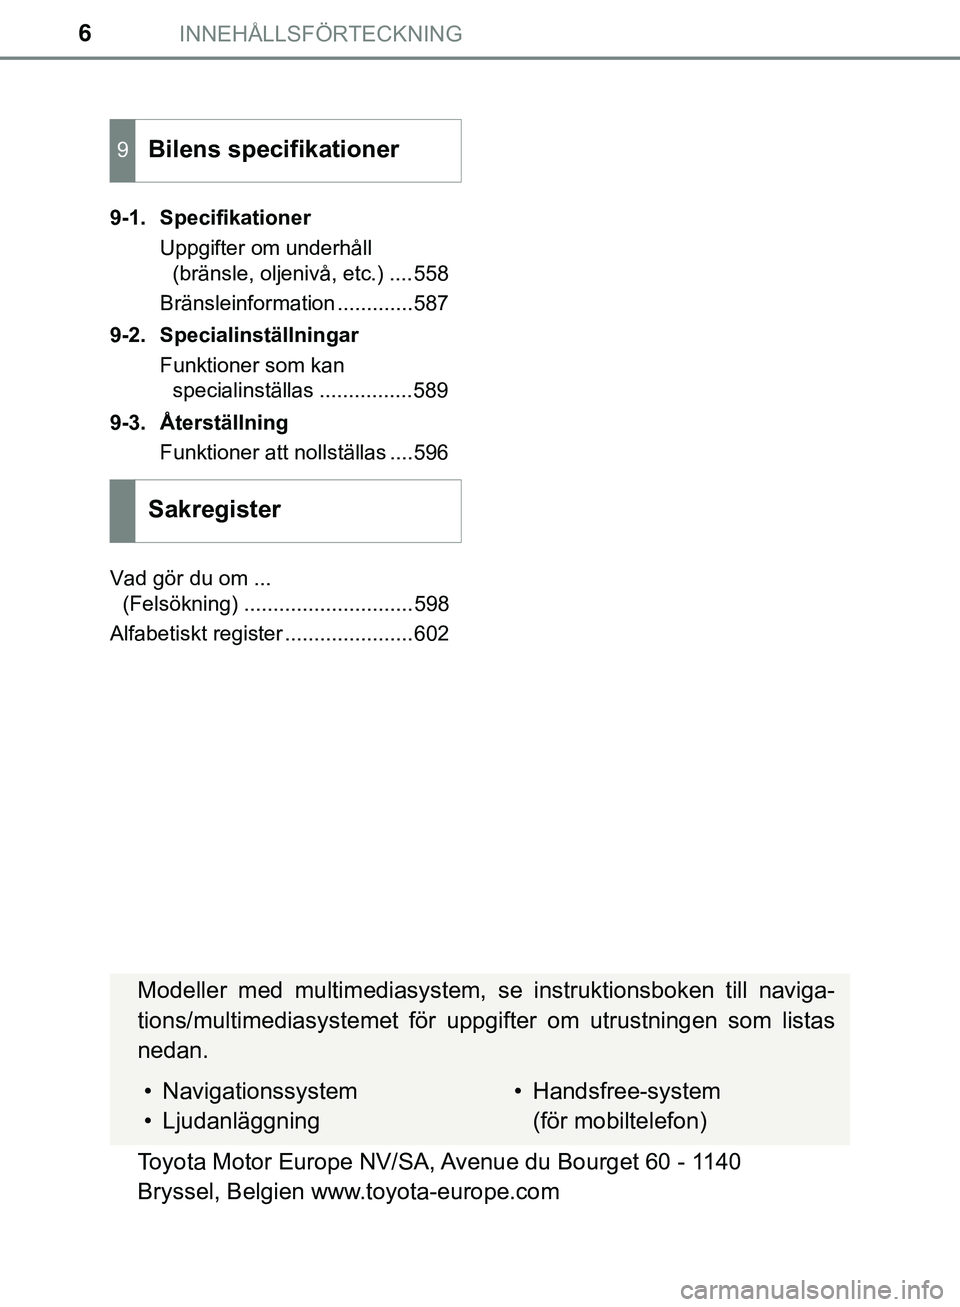 TOYOTA HILUX 2018  Bruksanvisningar (in Swedish) INNEHÅLLSFÖRTECKNING6
HILUX_OM_OM0K375SE9-1. Specifikationer
Uppgifter om underhåll (bränsle, oljenivå, etc.) ....558
Bränsleinformation .............587
9-2. Specialinställningar Funktioner so